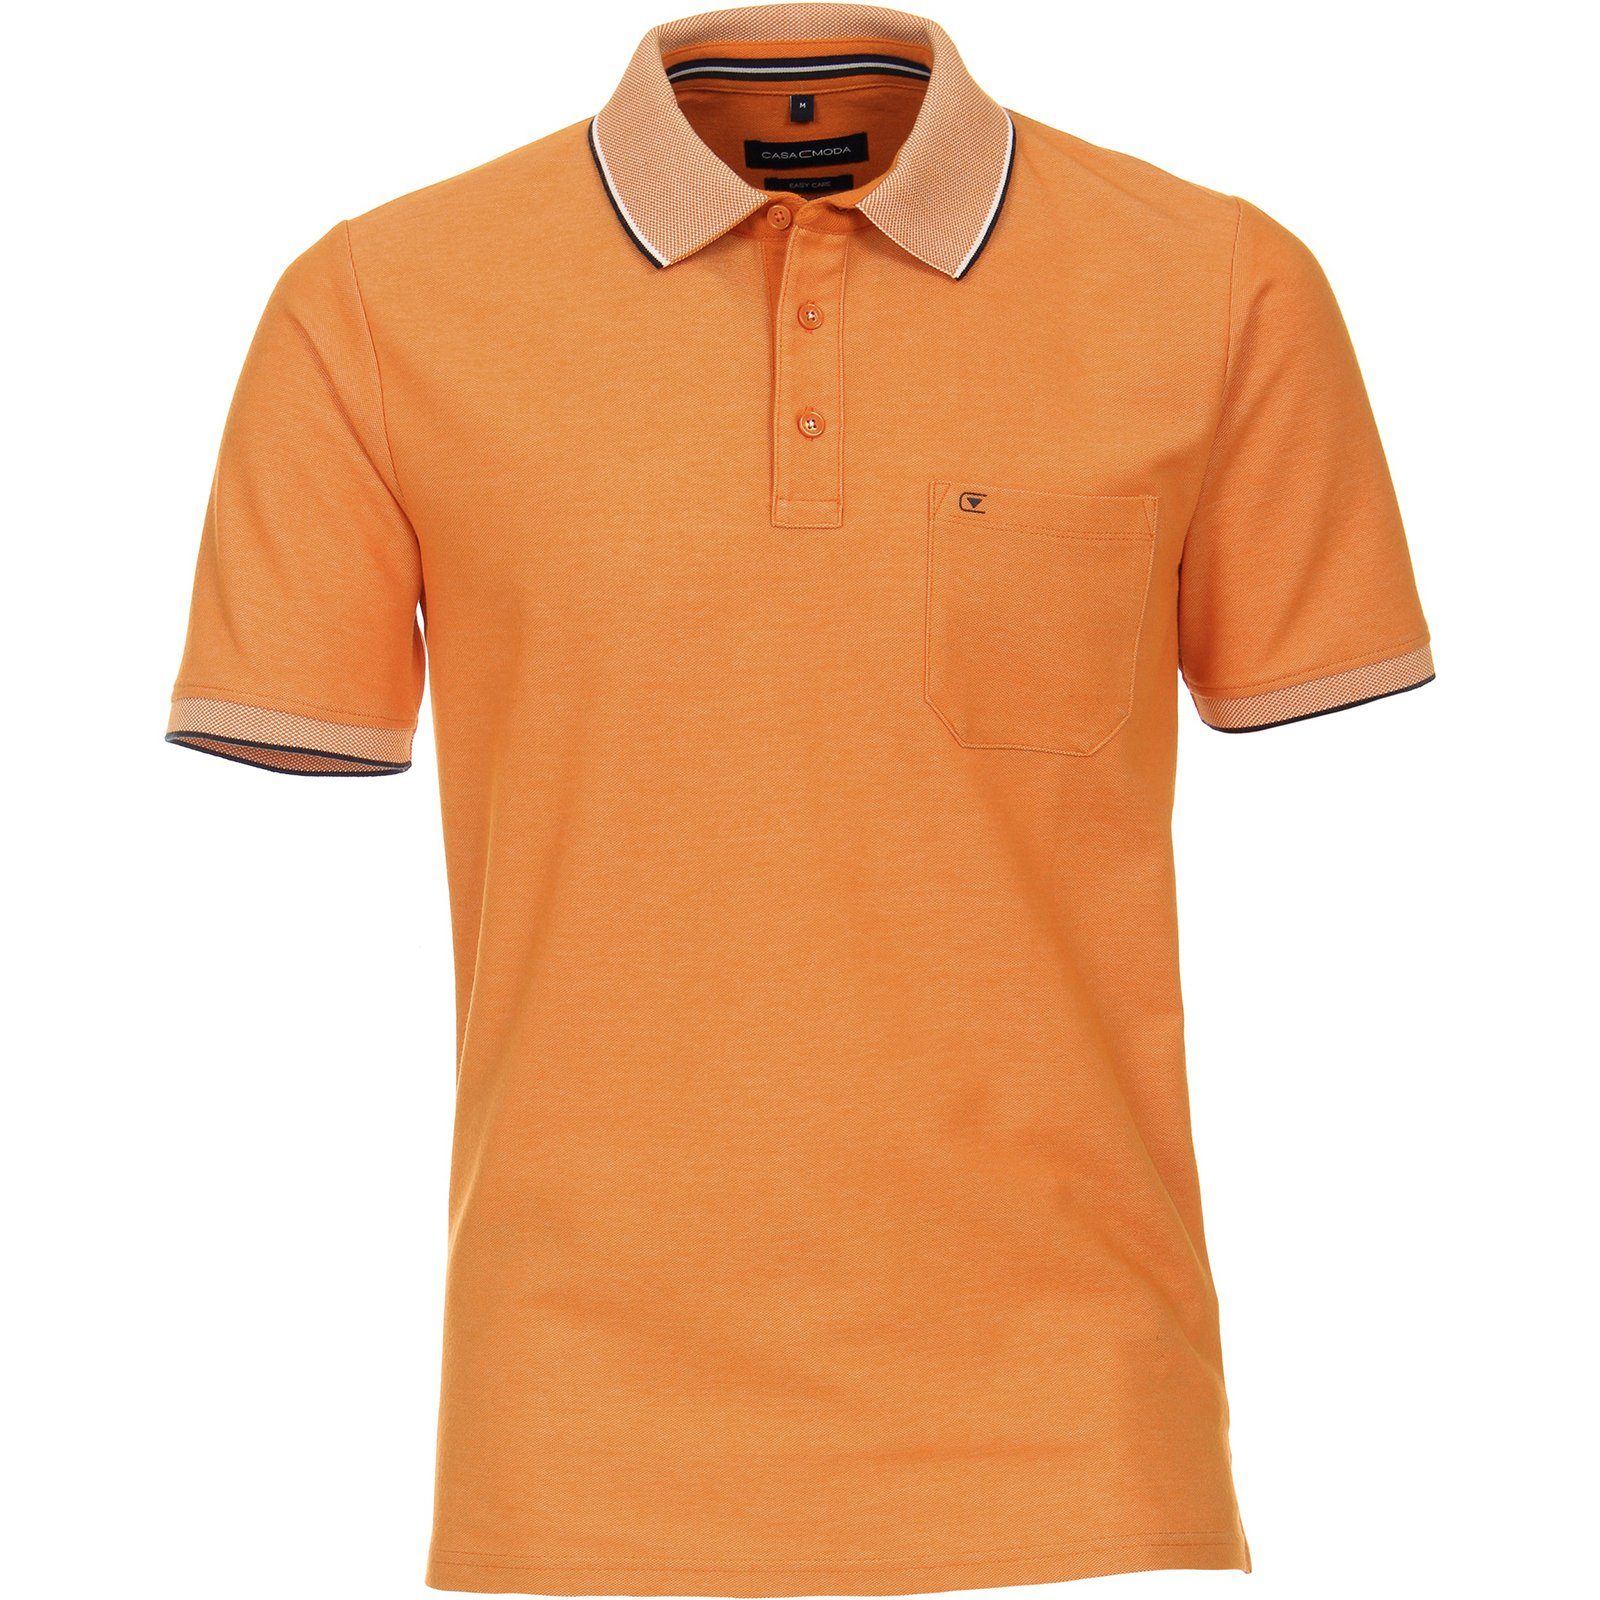 CASAMODA Poloshirt Große Größen Herren Poloshirt orange melange CasaModa easy care